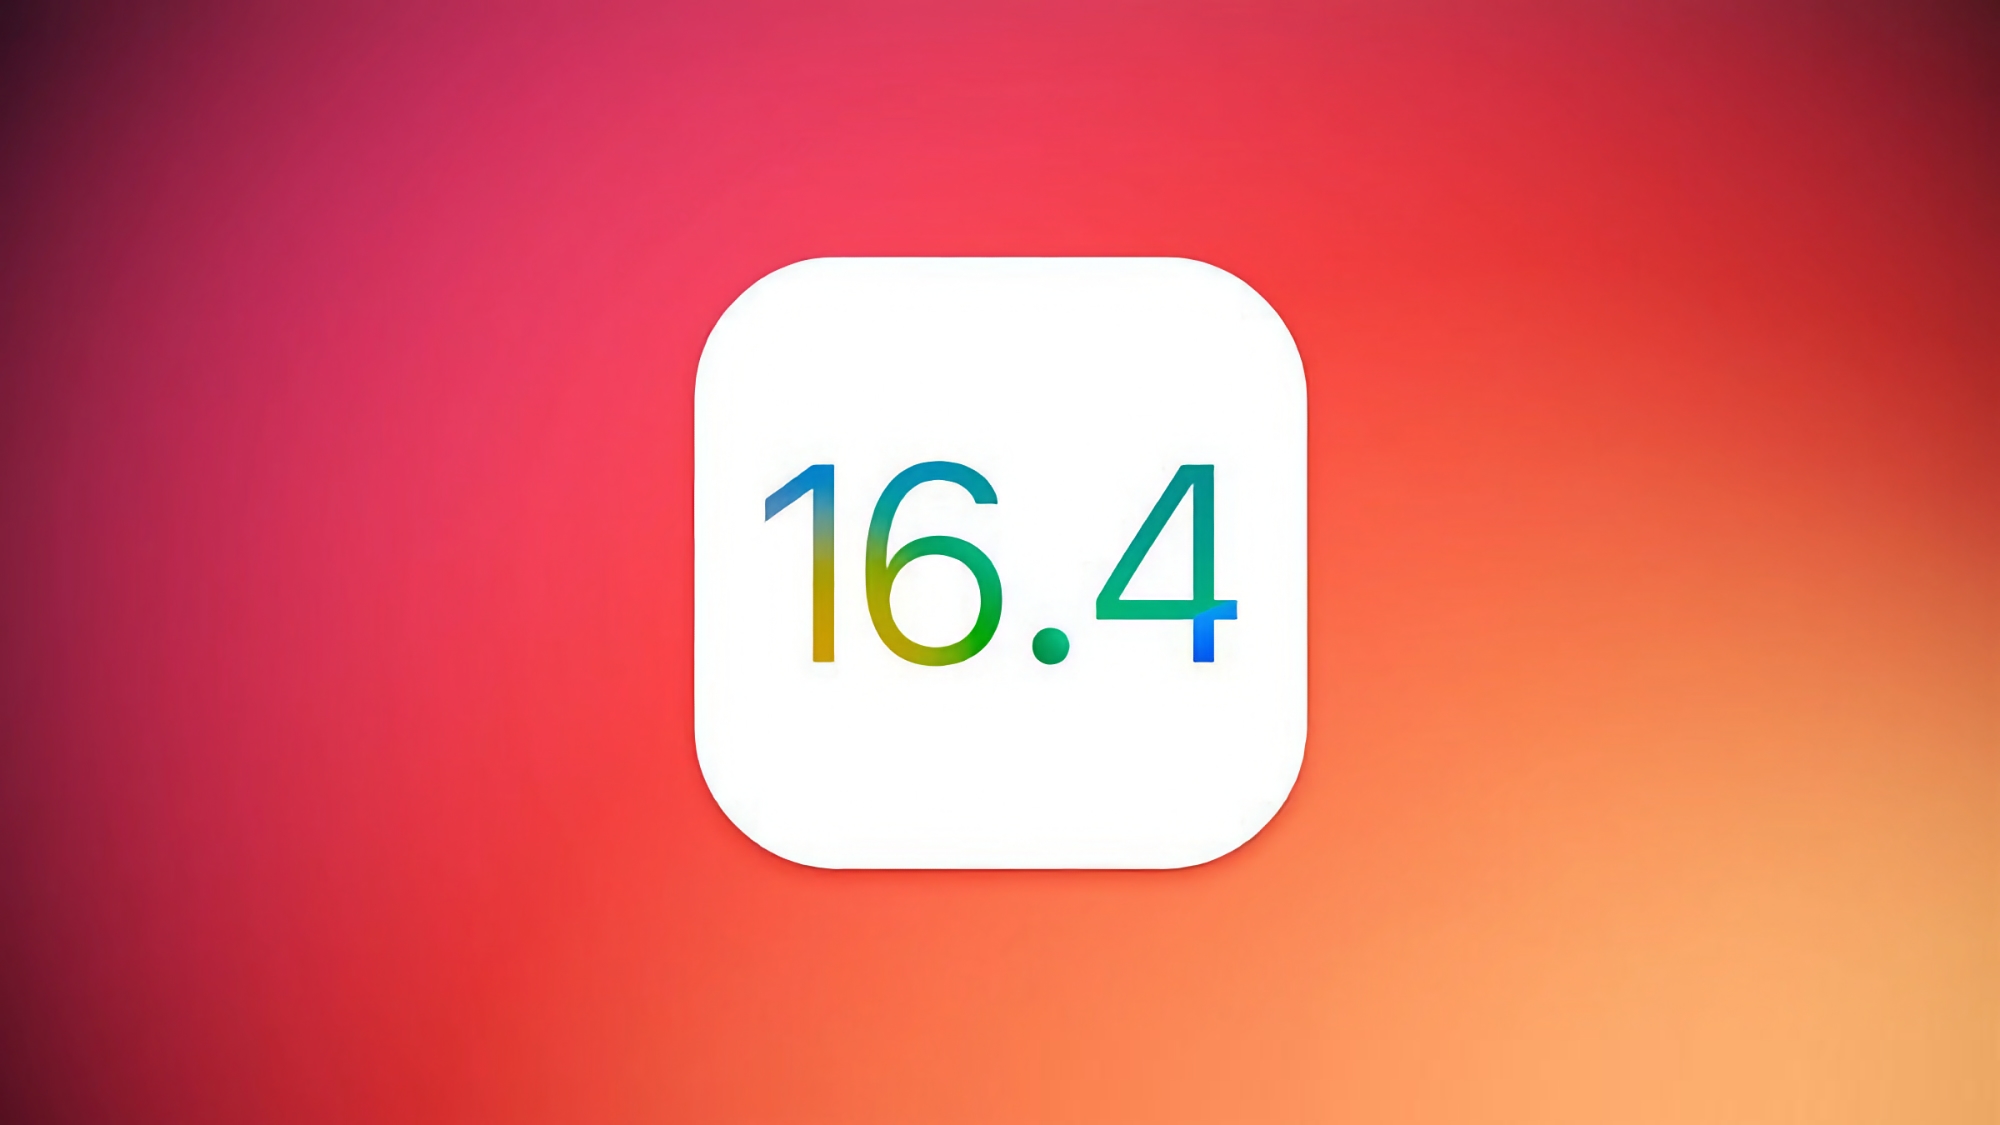 Apple veröffentlicht iOS 16.4 Beta 2: Was ist neu